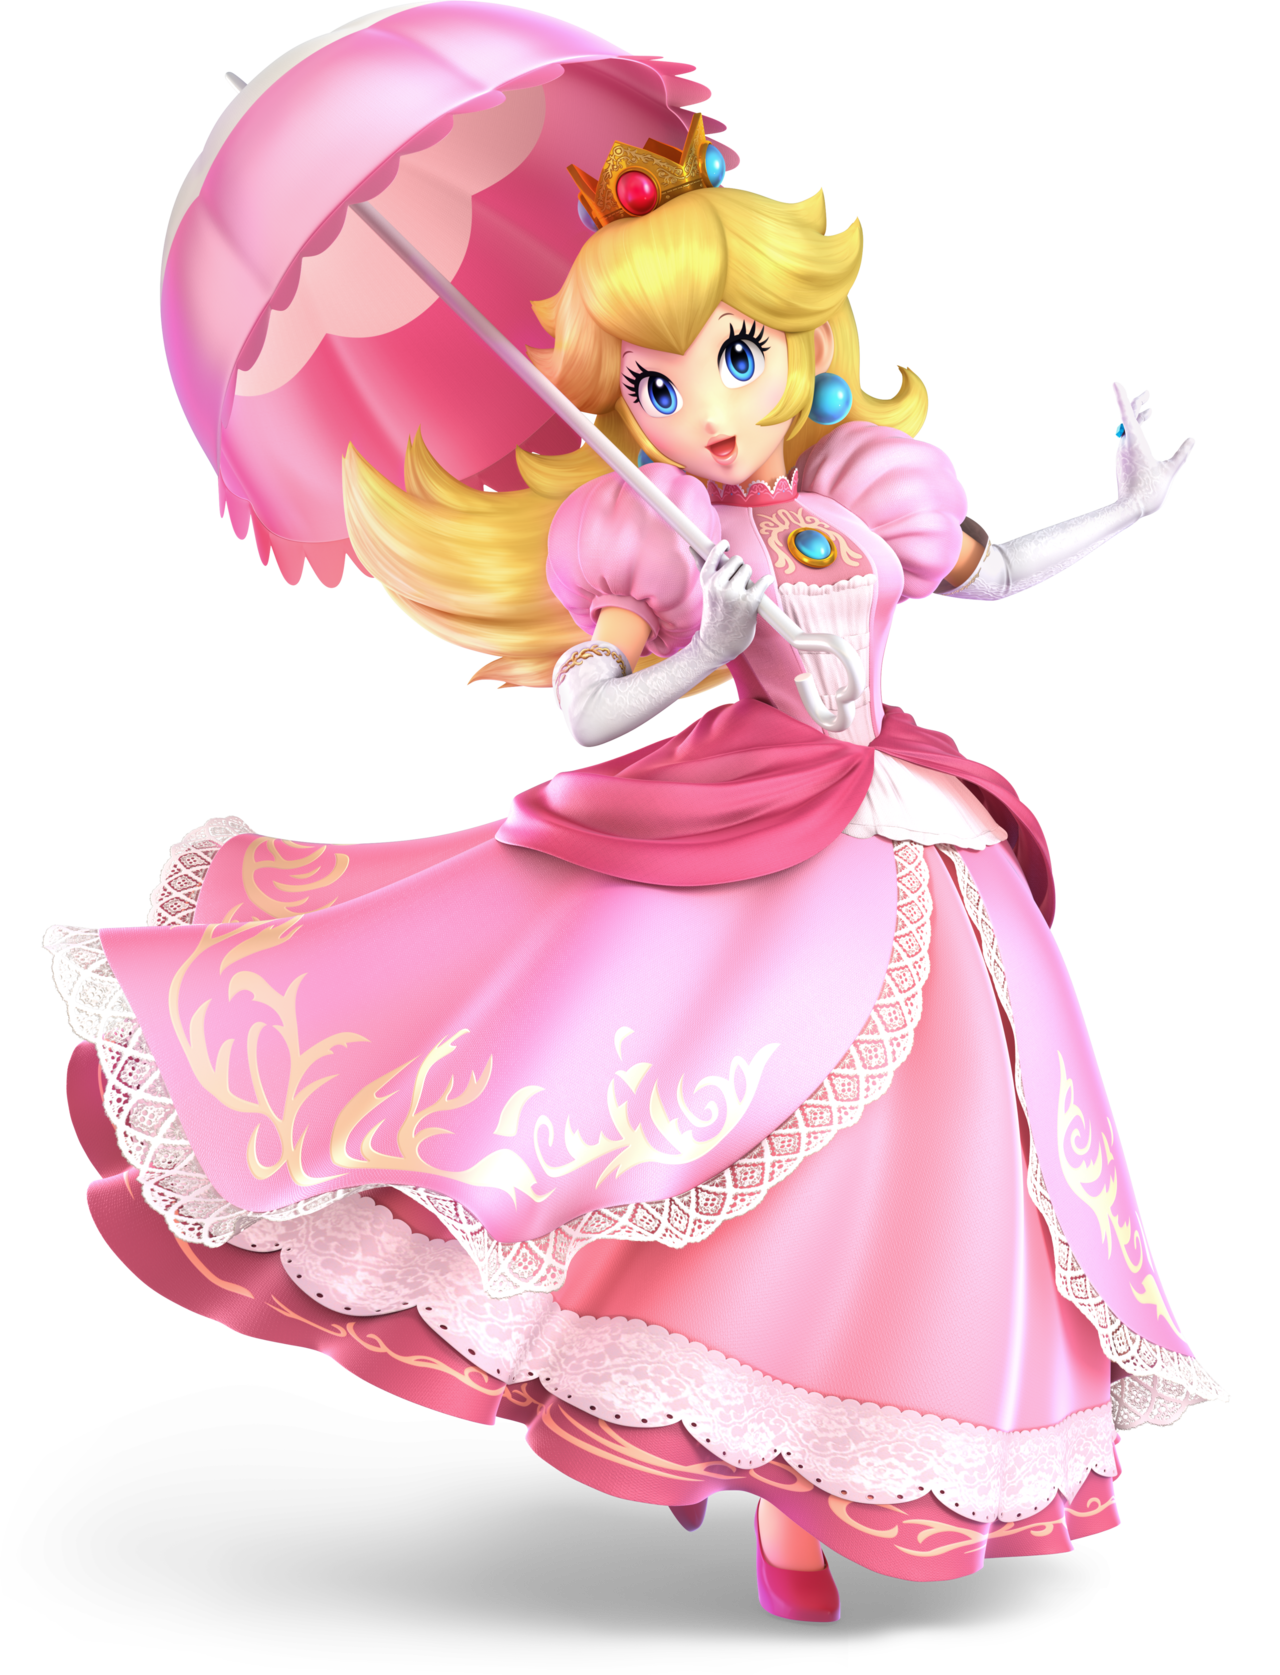 Princess Peach/#1854672  Peach mario bros, Peach mario, Super